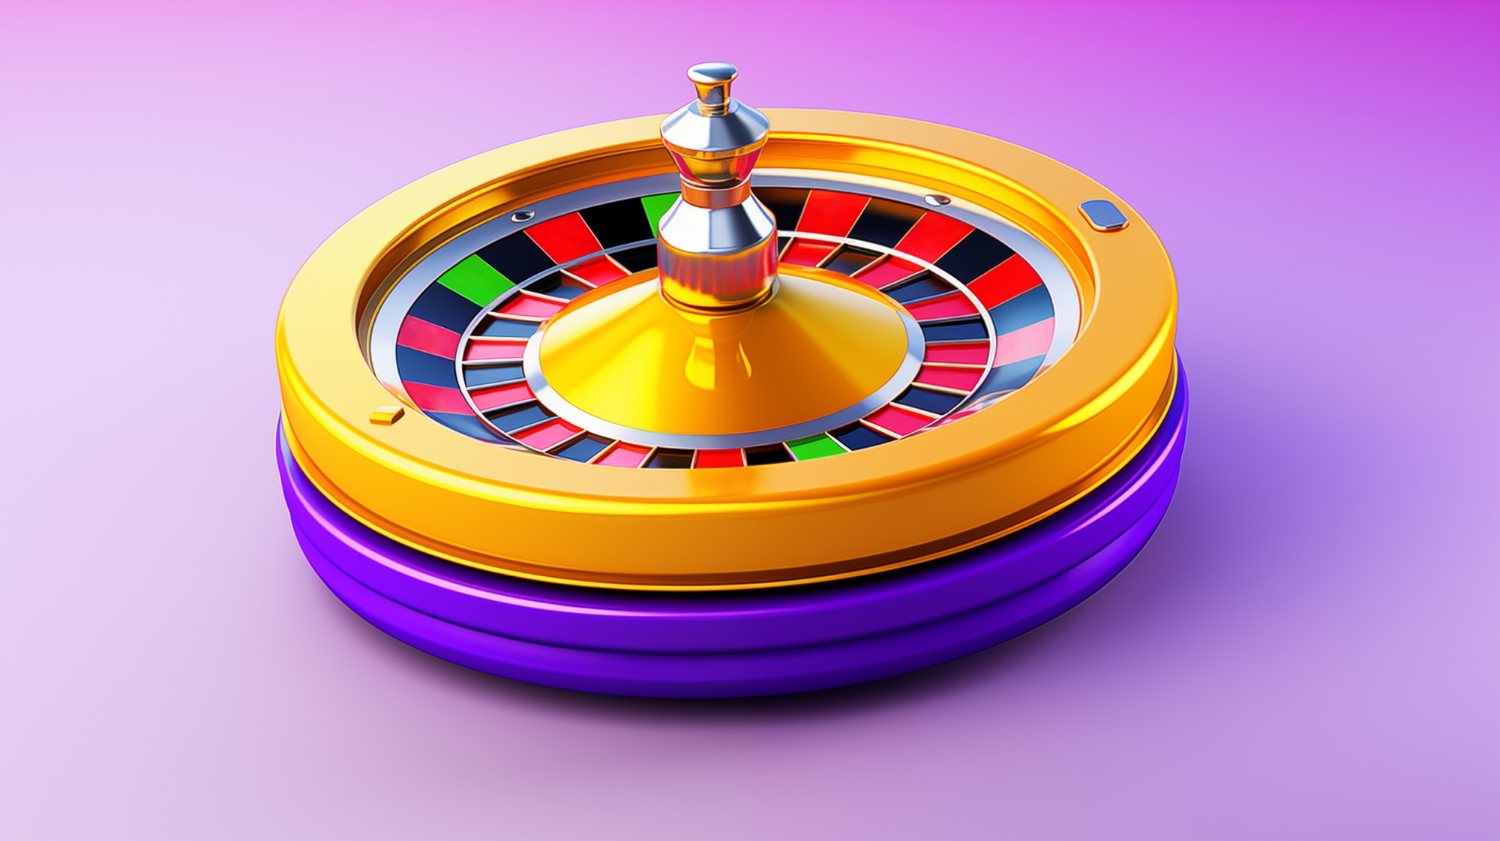 casino-roulette